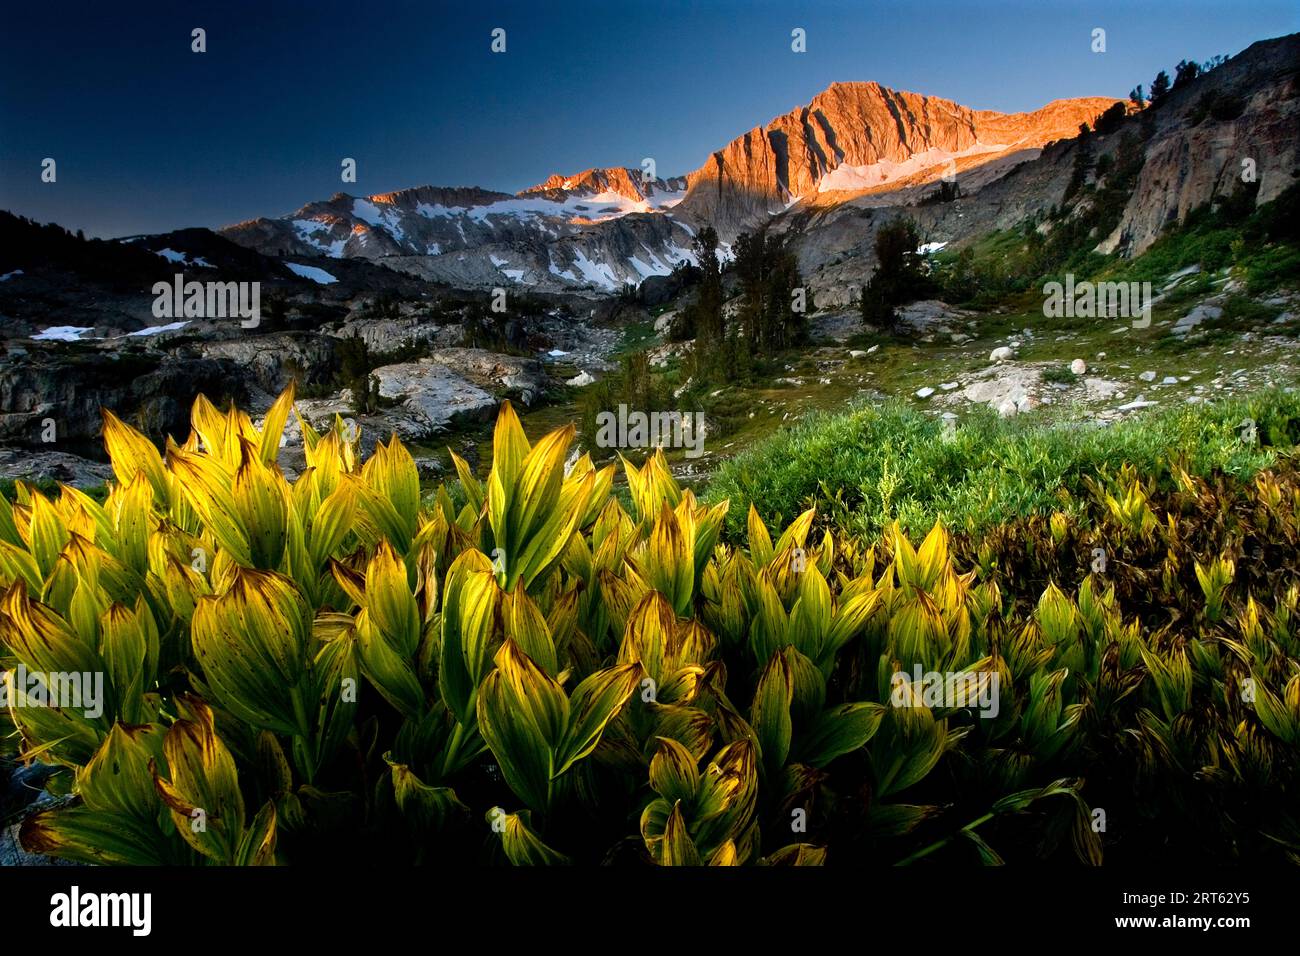 Mount Conness est une montagne de la Sierra Nevada située près de Saddlebag Lake Loop dans l'est de la Sierra High Country, en Californie. La lueur de corn Lily au premier plan ; Septemb Banque D'Images